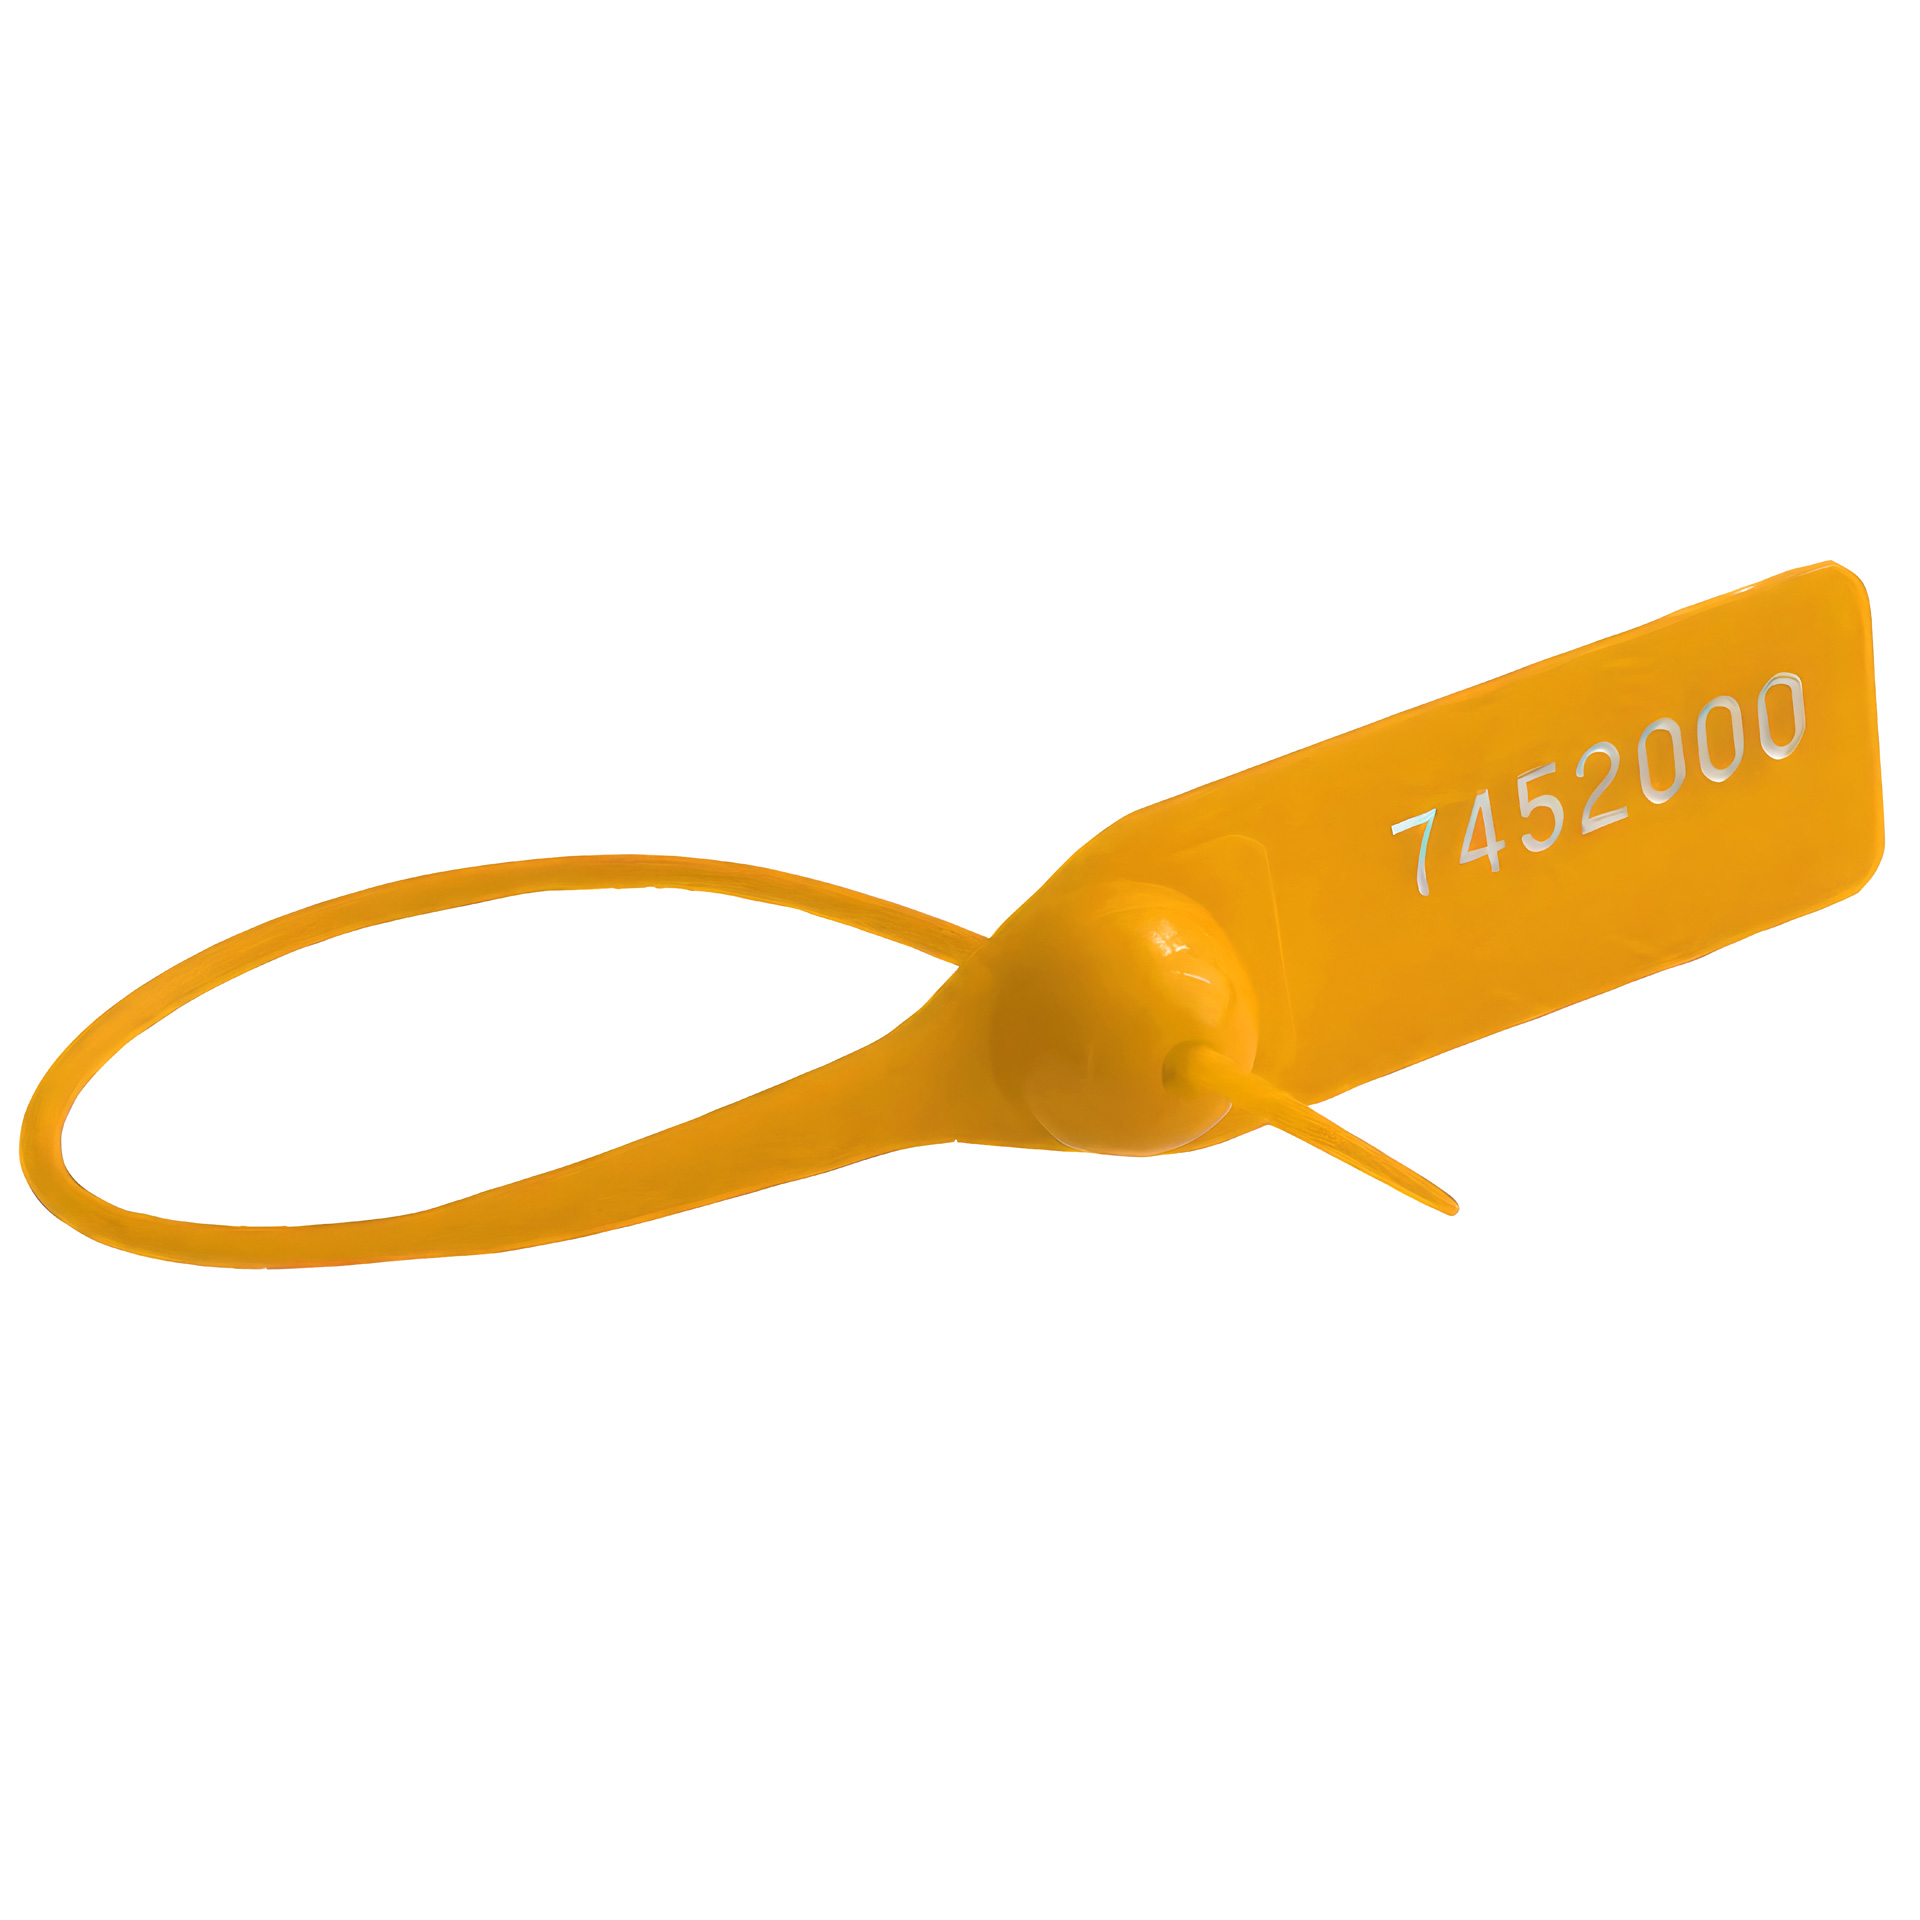 Пломба номерная пластиковая ОСА-150 желтый оптом в наличии, на заказ